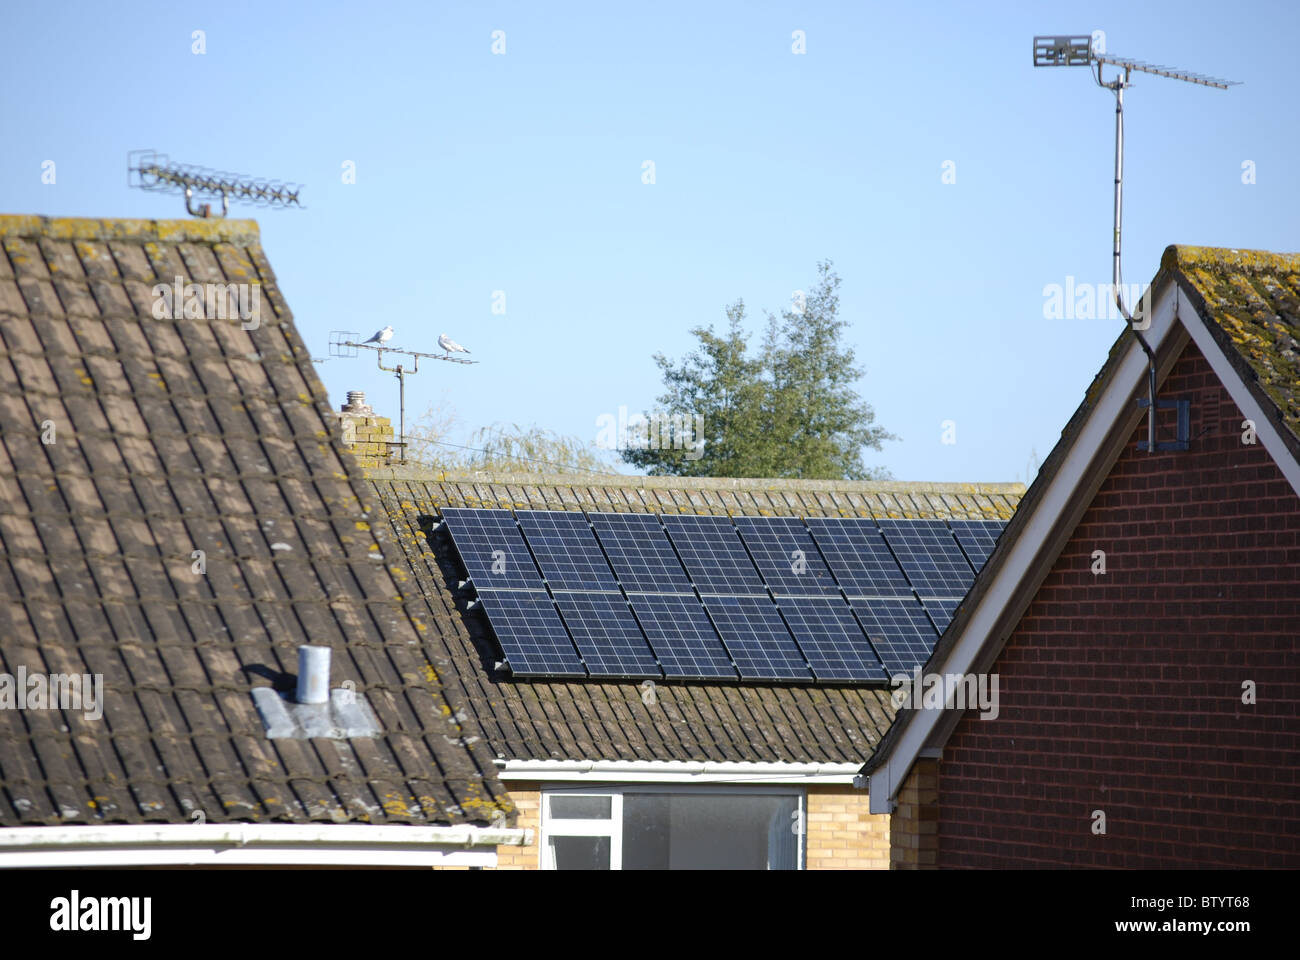 Sonnenkollektoren auf dem Dach eines Hauses in UK. Neue PV-Anlagen können von der Regelung der Einspeisevergütung Einkommen generieren. Stockfoto